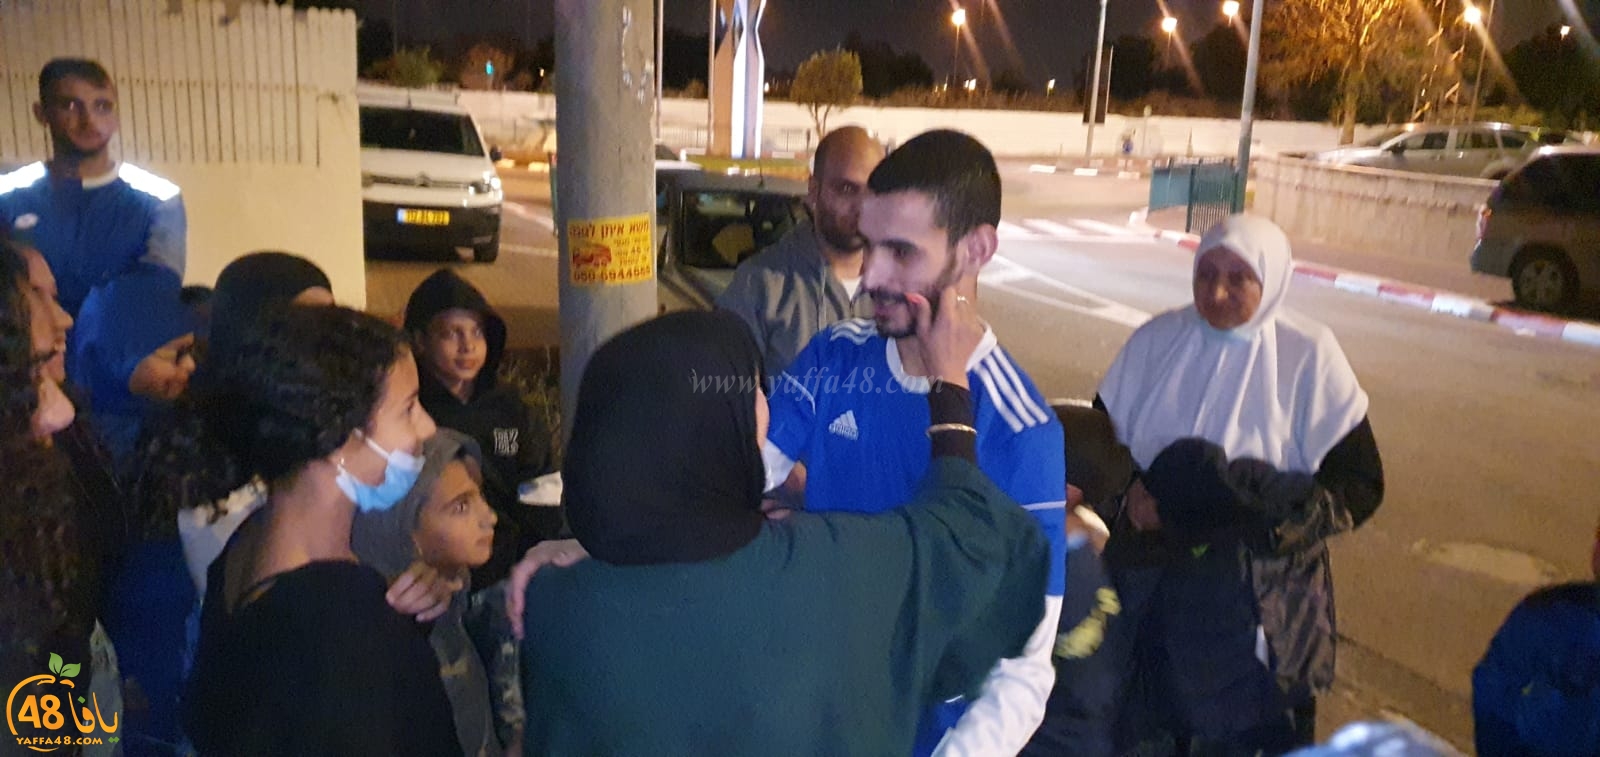  اللد: الإفراج عن الشاب موسى عبد الحميد حسونة من معتقلي هبّة الكرامة